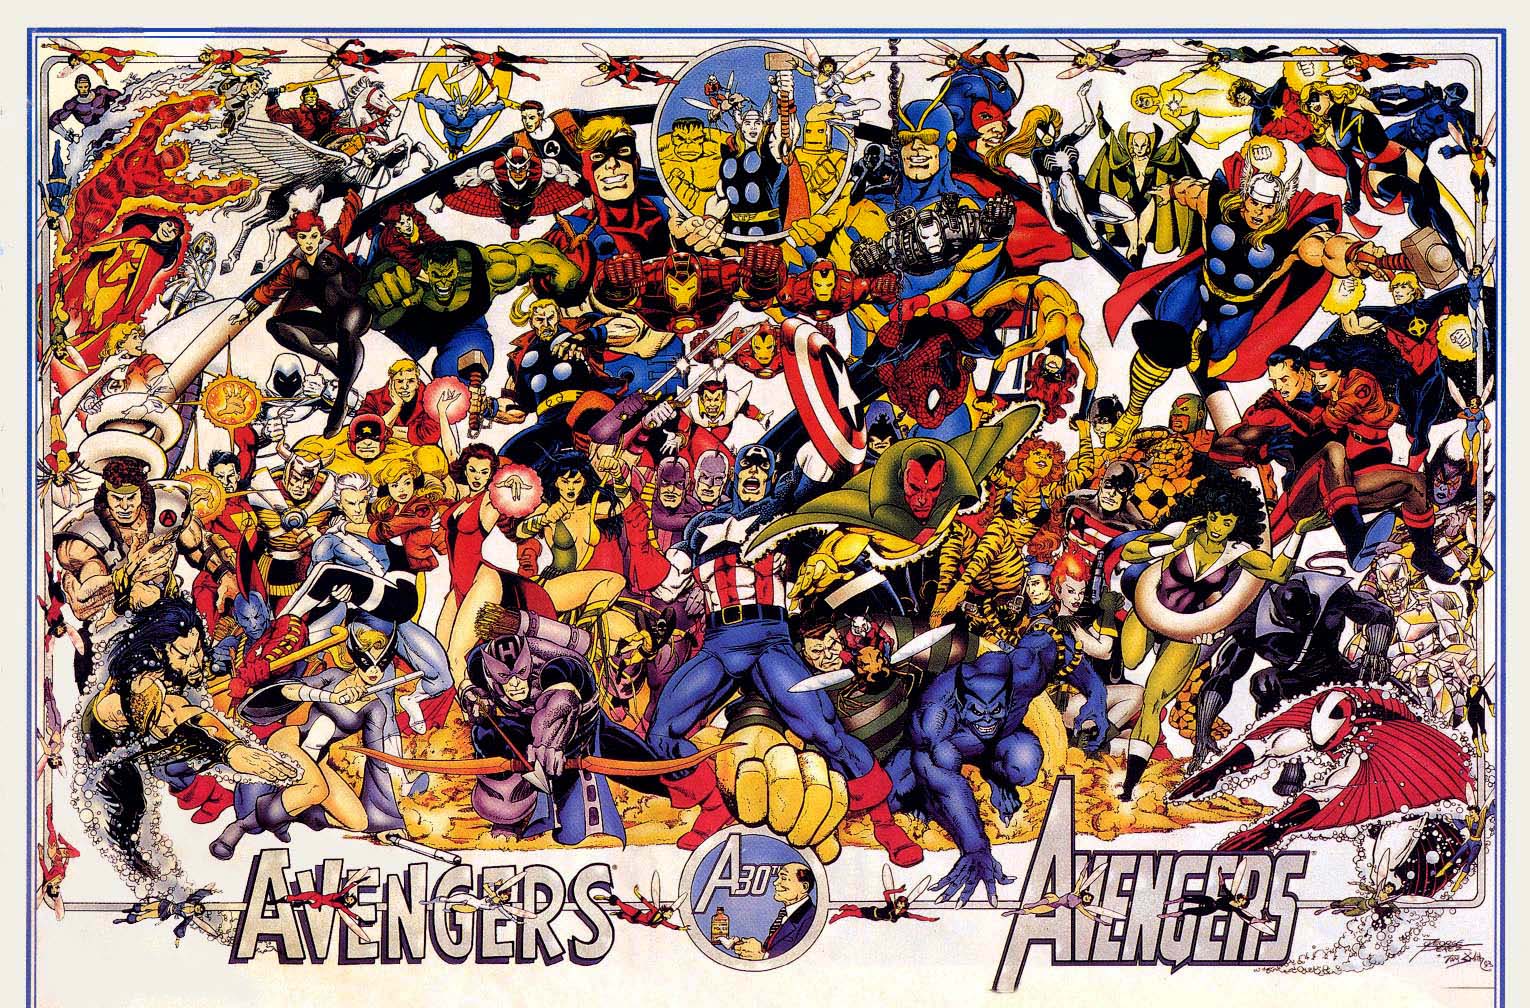 the avengers wallpaper